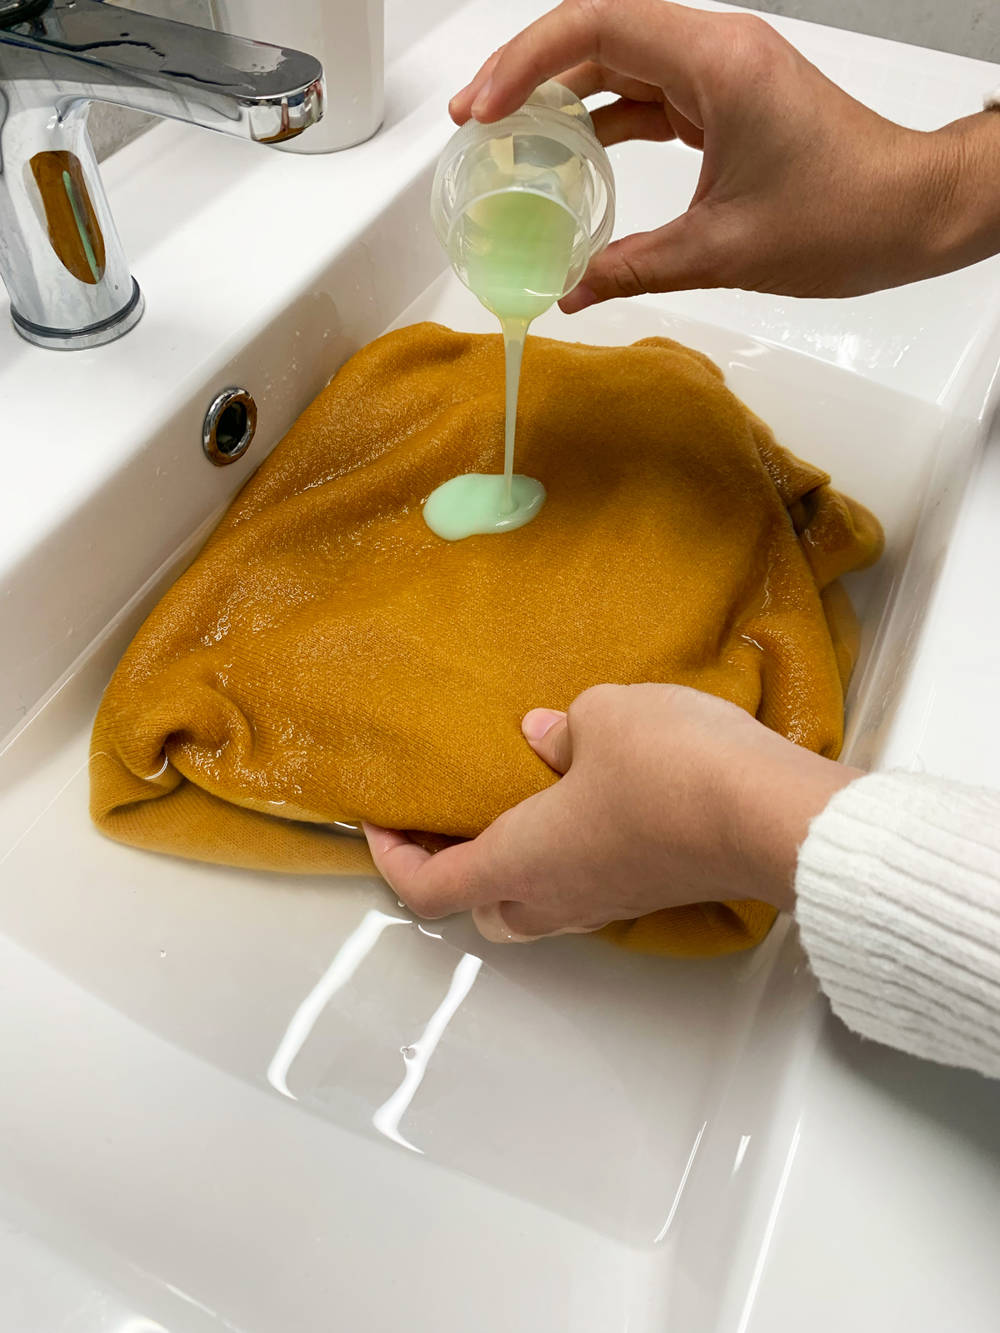 Proceso de lavado del jersey de cachemira con detergente.